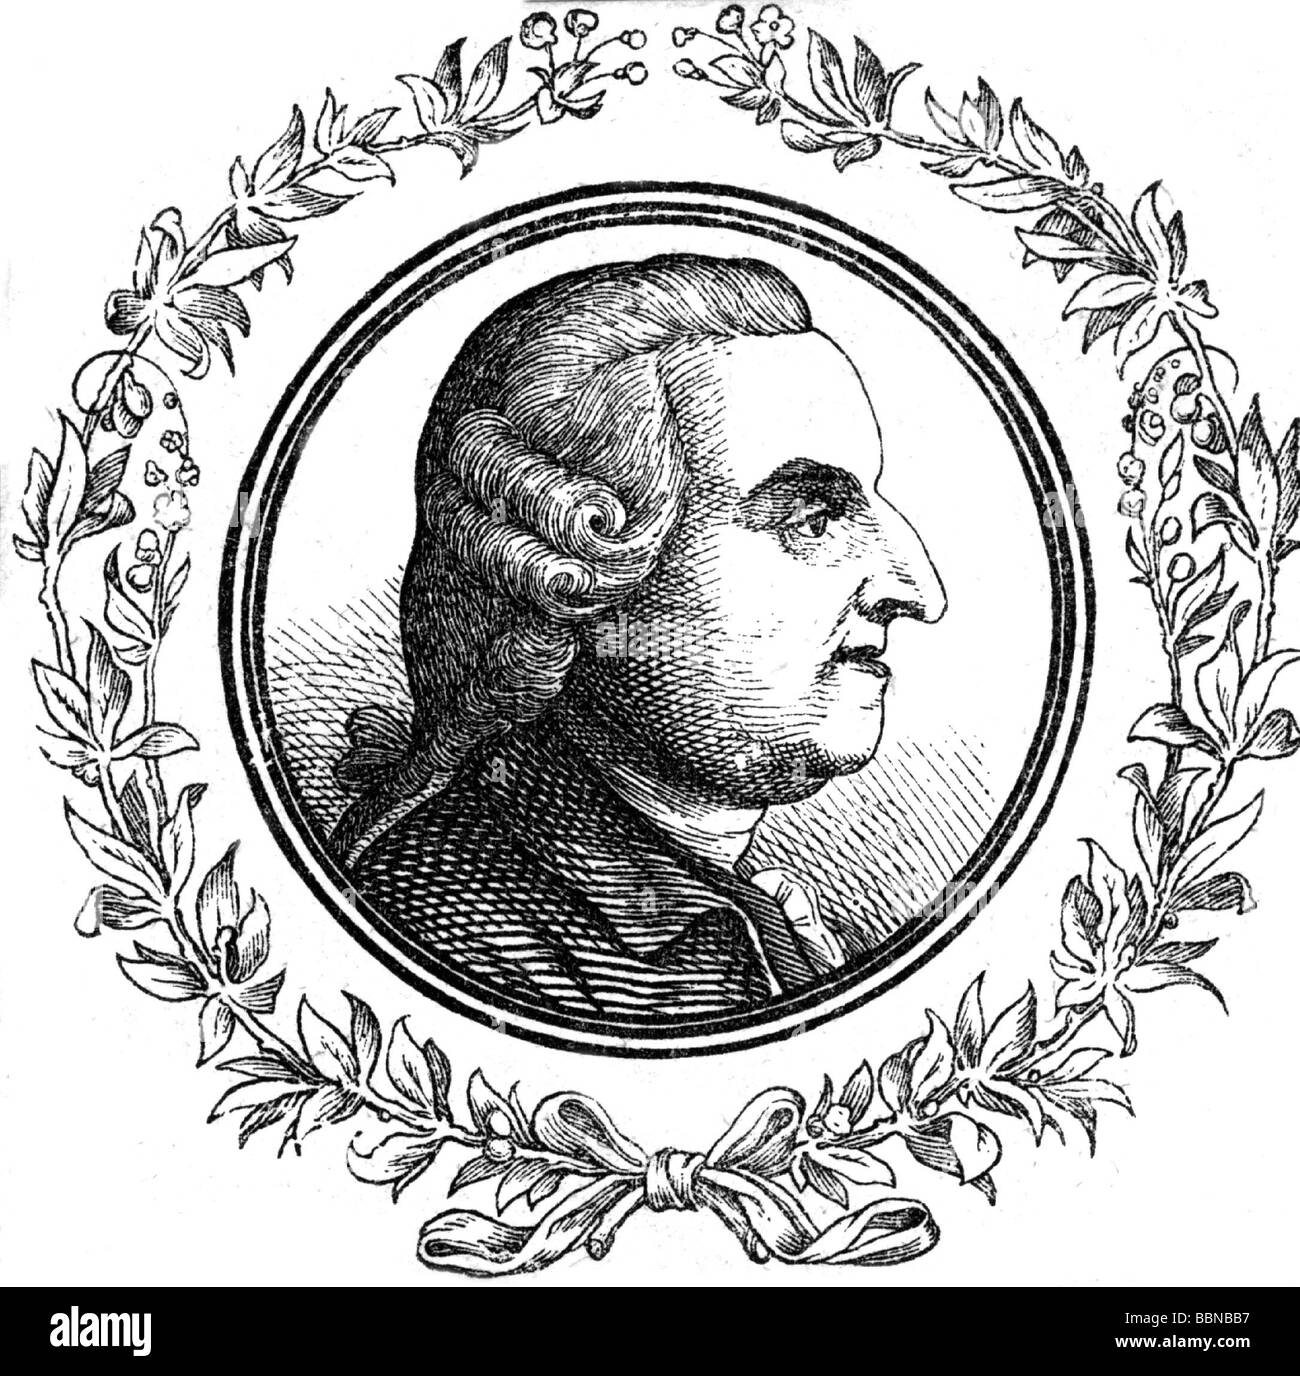 Grau, Thomas, 26.12.1716 - 30.7.171, britischer Autor/Schriftsteller (Dichter), Porträt, nach anonymer Holzgravur, 18. Jahrhundert, Stockfoto